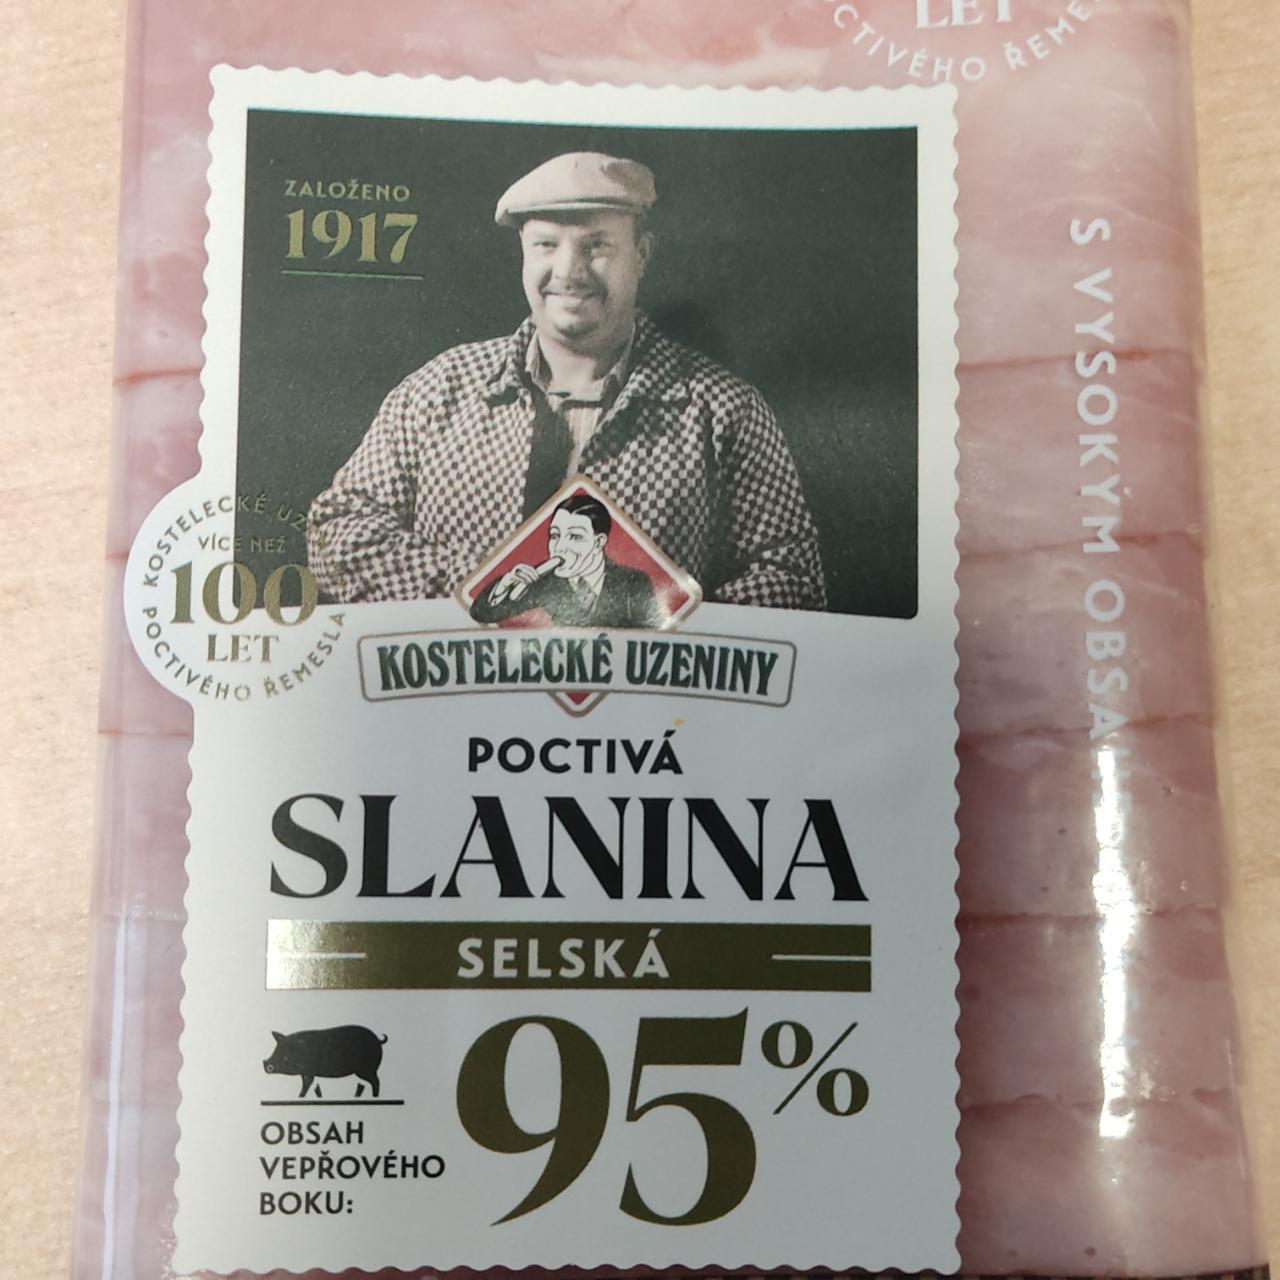 Fotografie - Poctivá selská slanina 95% Kostelecké uzeniny